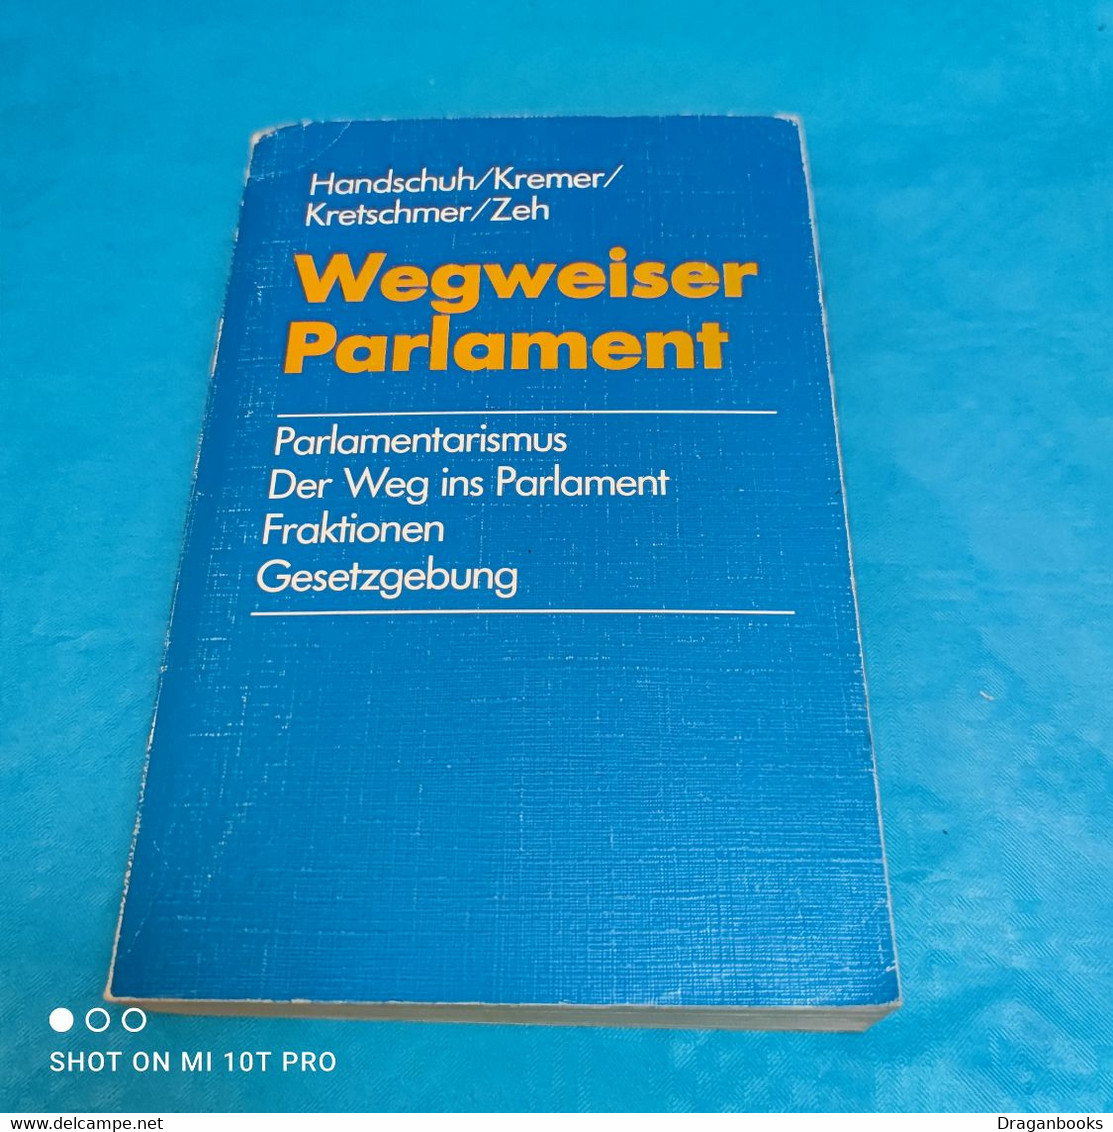 Handschuh U.a. - Wegweiser Parlament - Contemporary Politics